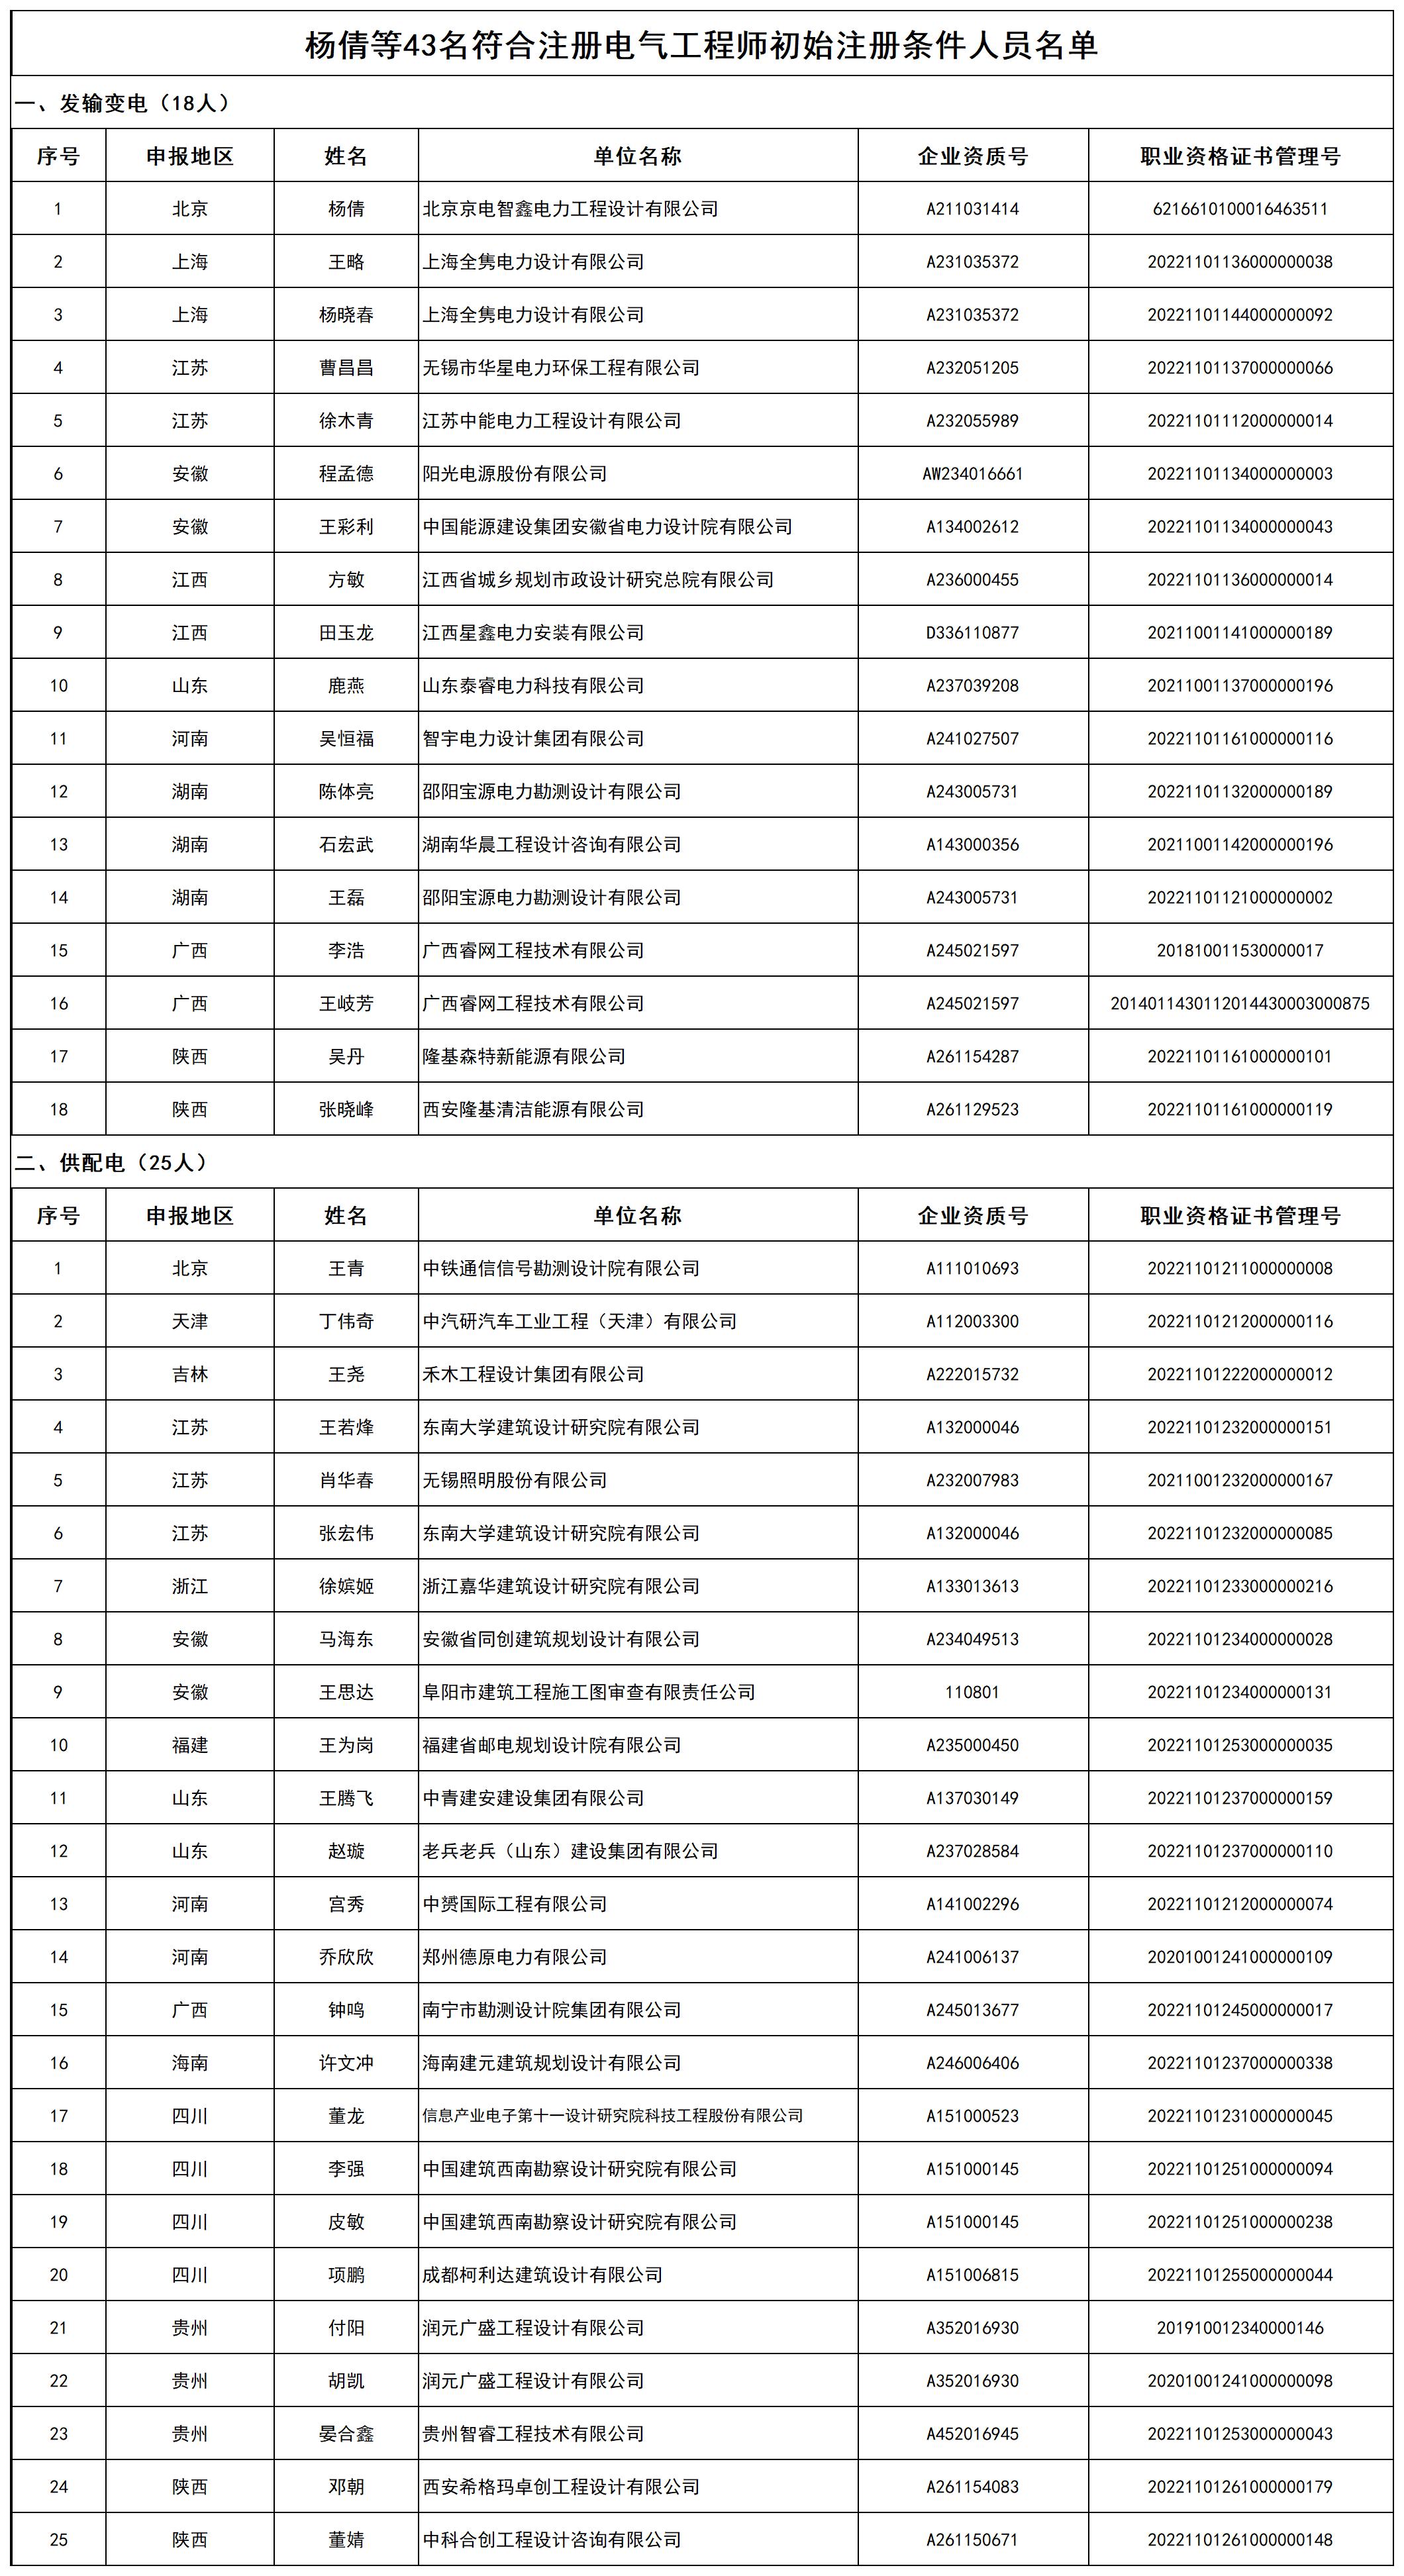 杨倩等43名符合注册电气工程师初始注册条件人员名单_打印结果.jpg